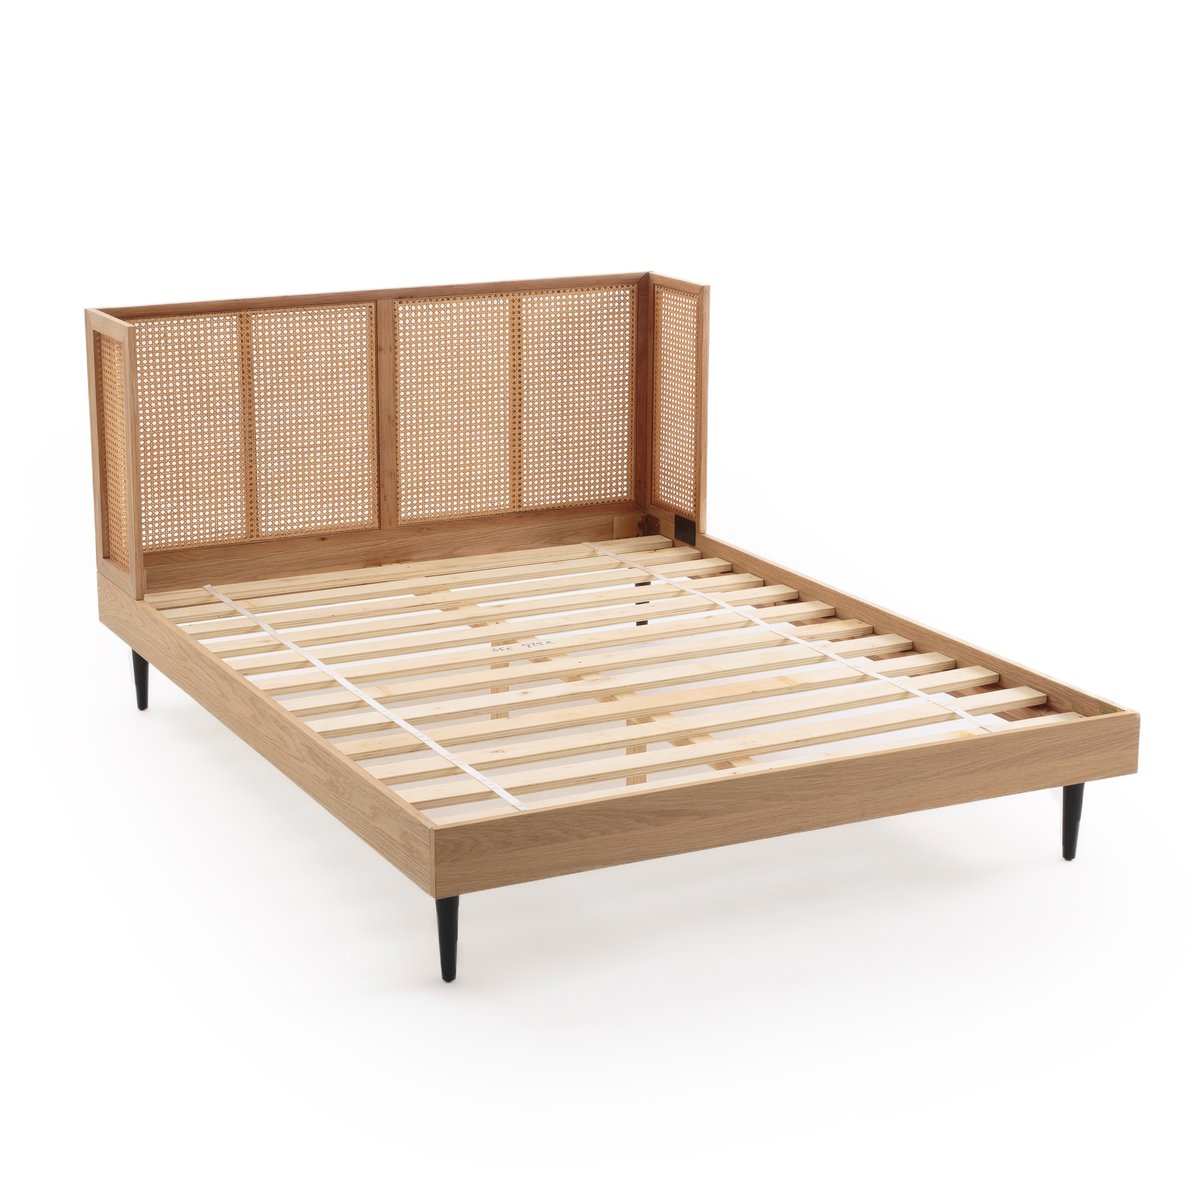 Кровать La Redoute Из плетеного ротанга с сеткой WASKA 140 x 190 см каштановый, размер 140 x 190 см - фото 3